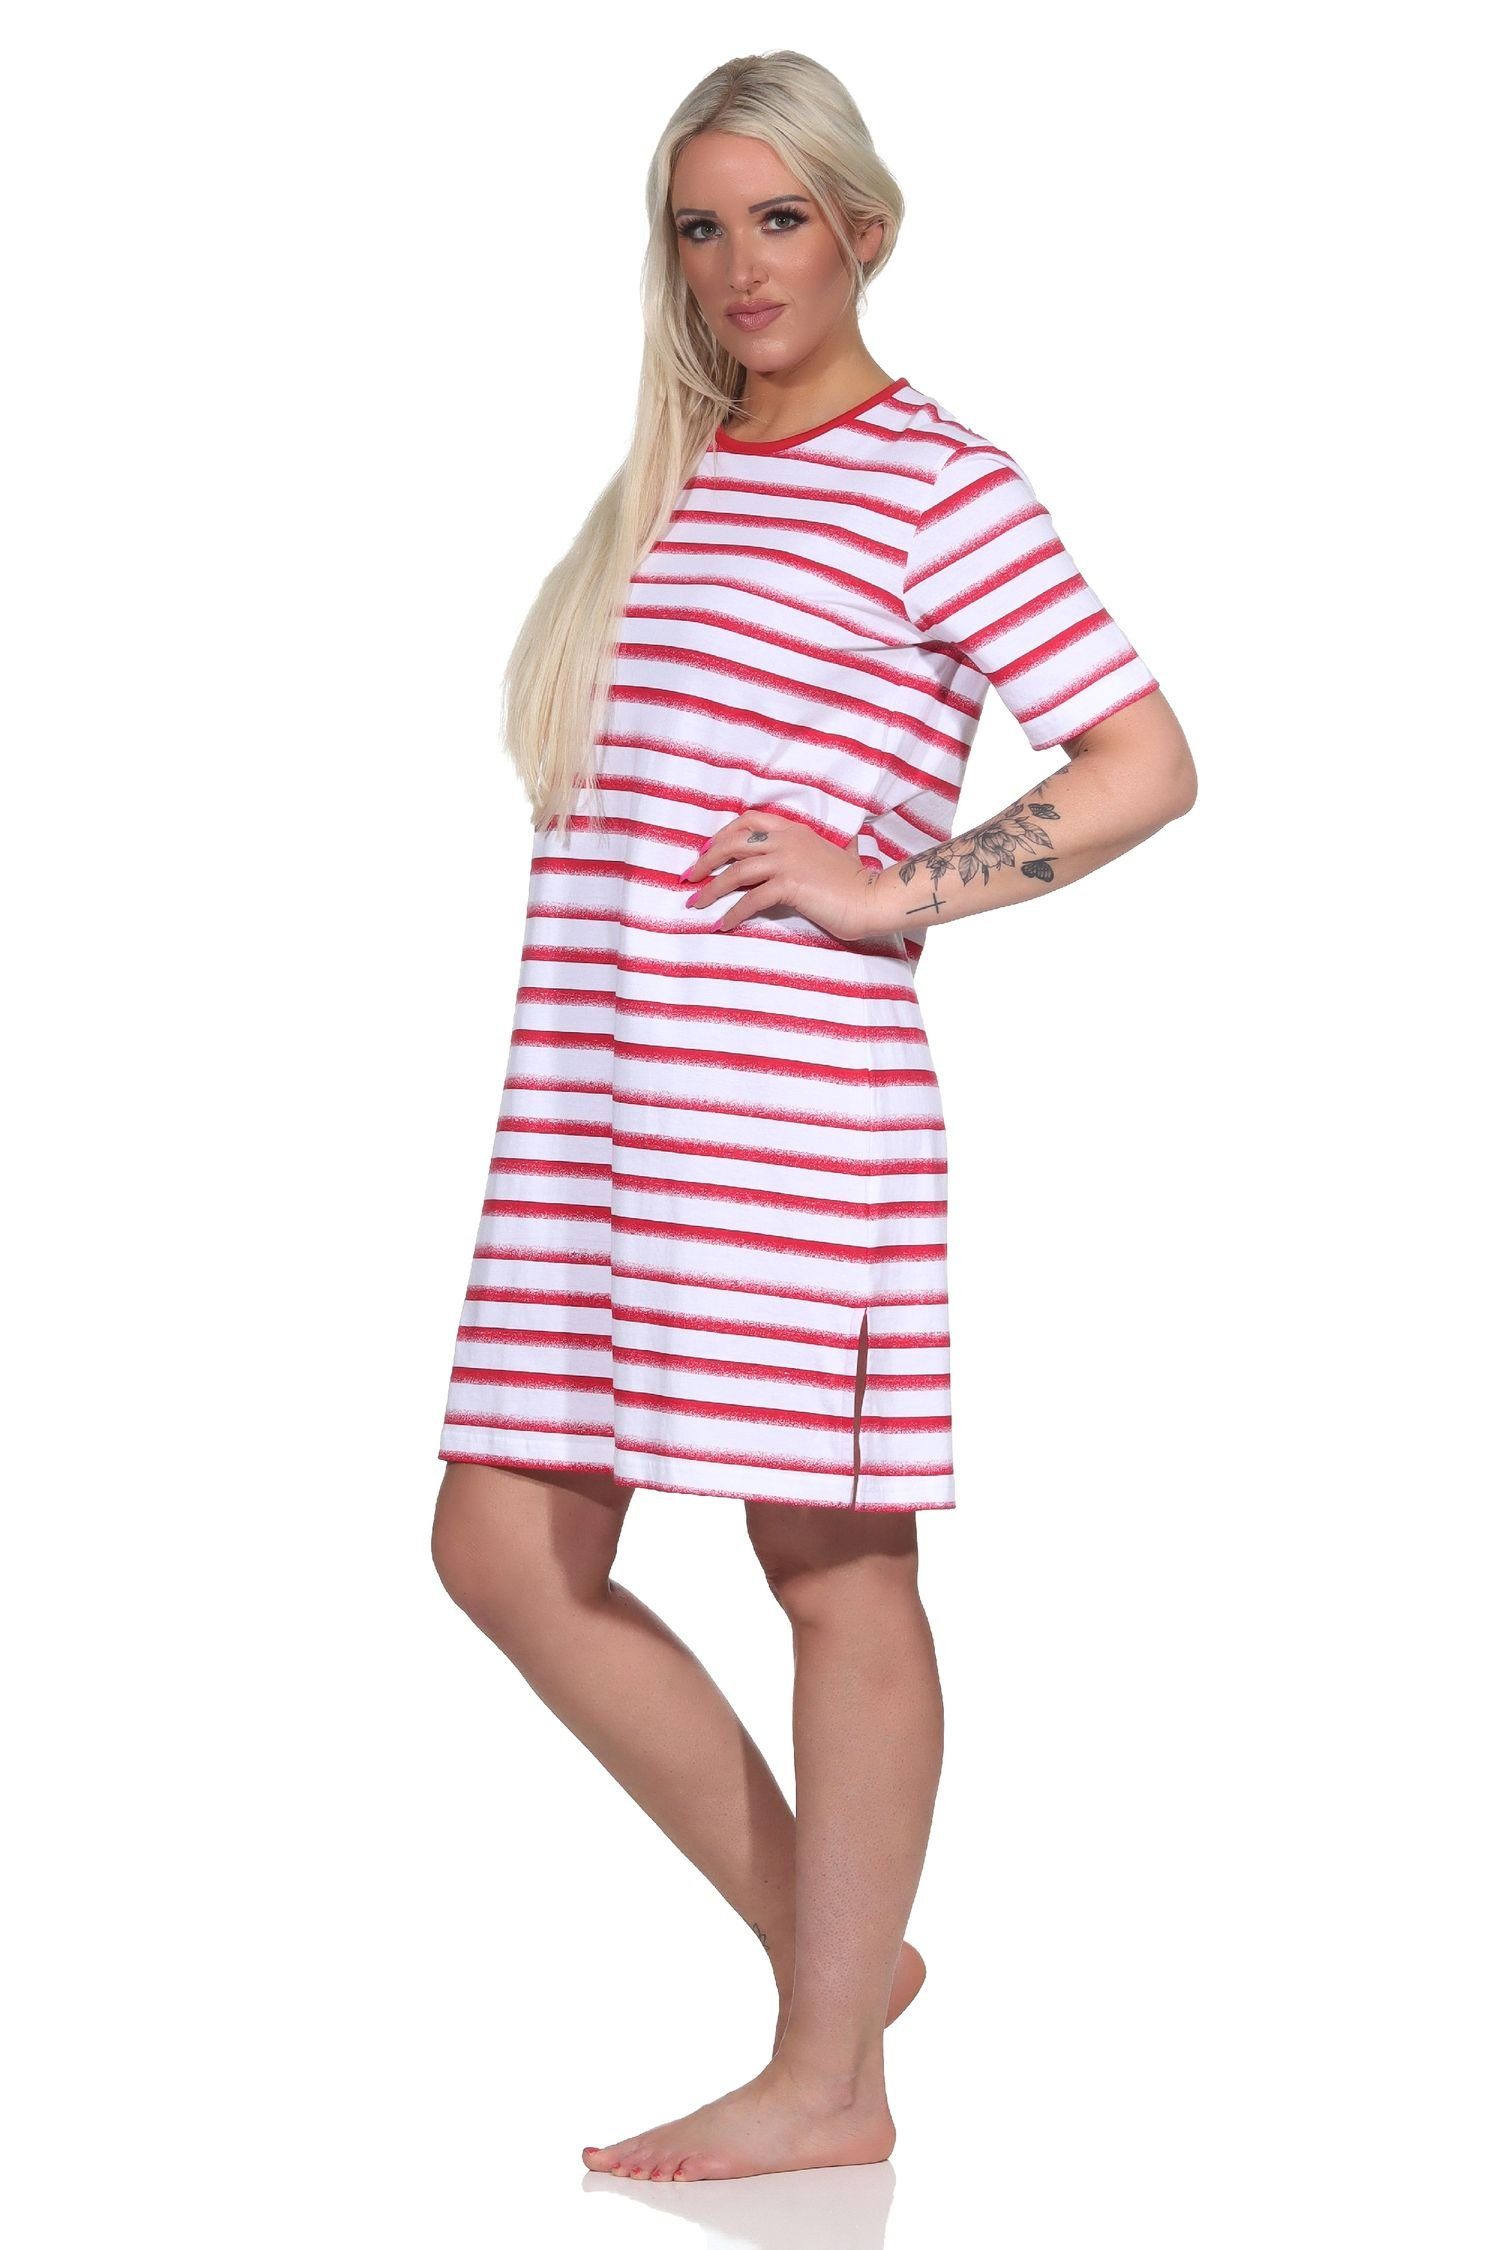 Normann Nachthemd Damen Nachthemd in Streifenoptik in kurzarm Übergröße rot maritimer -auch